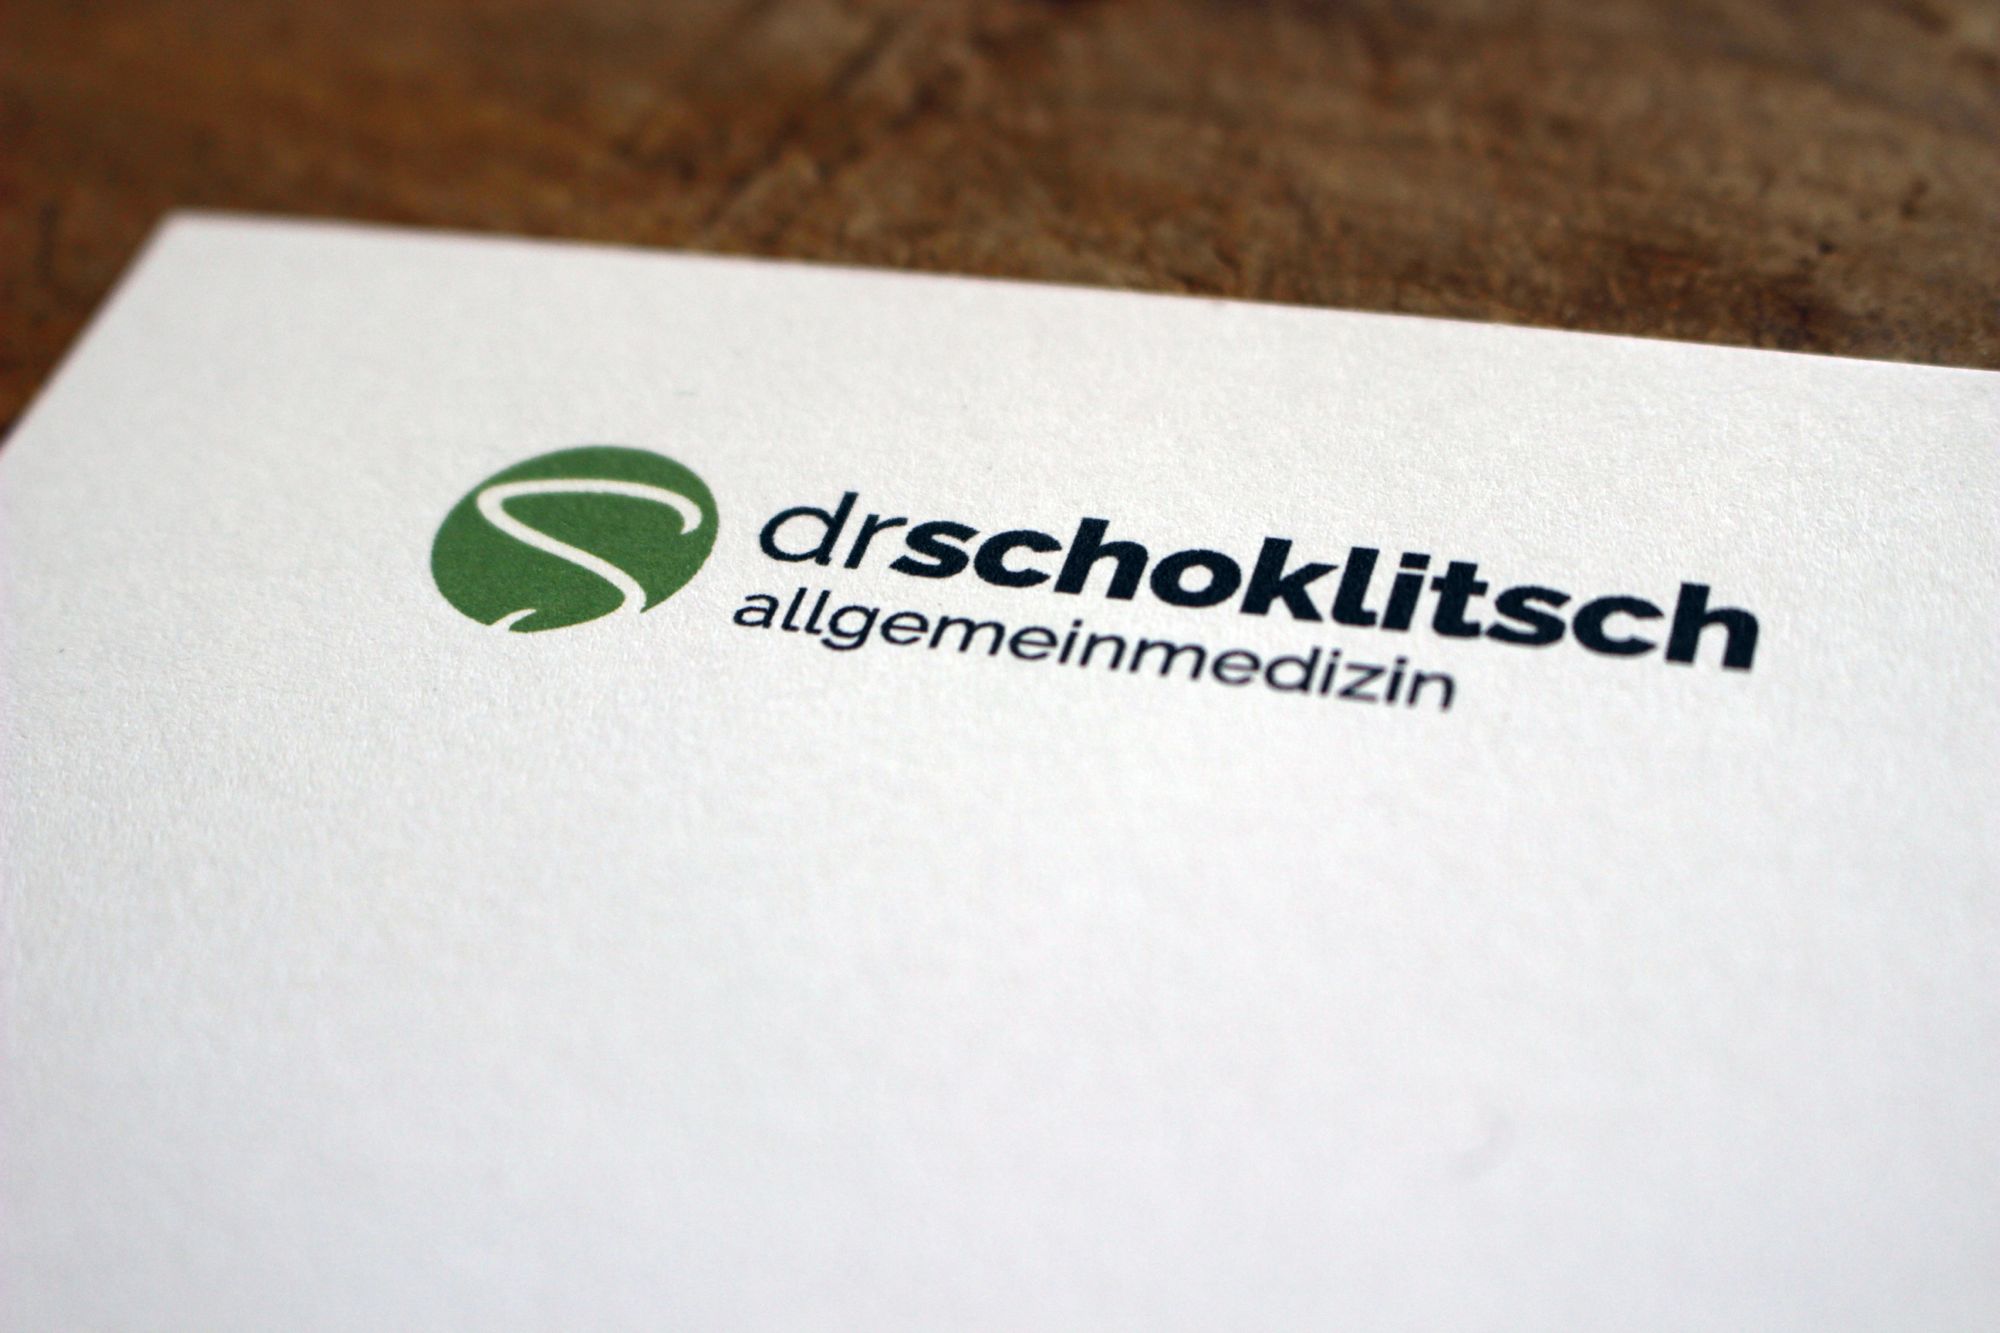 Corporate Design und Geschäftsausstattung für Dr. Nico Schoklitsch